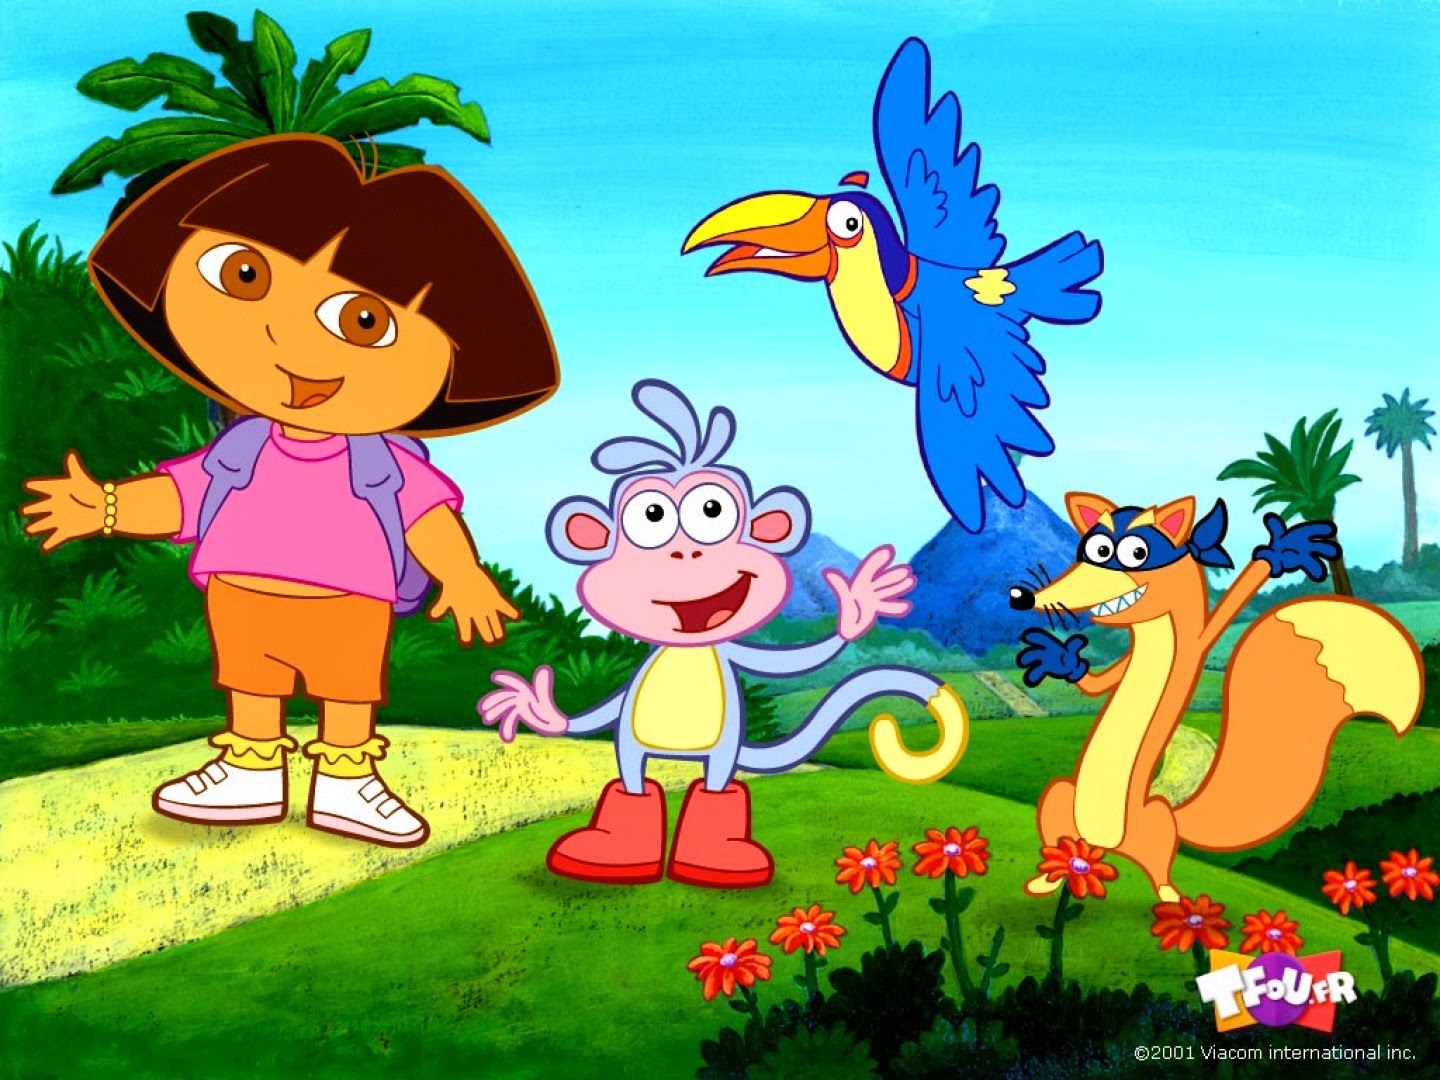 La pequeña Dora, en compañía de sus amigos hará las delicias de los niños. 